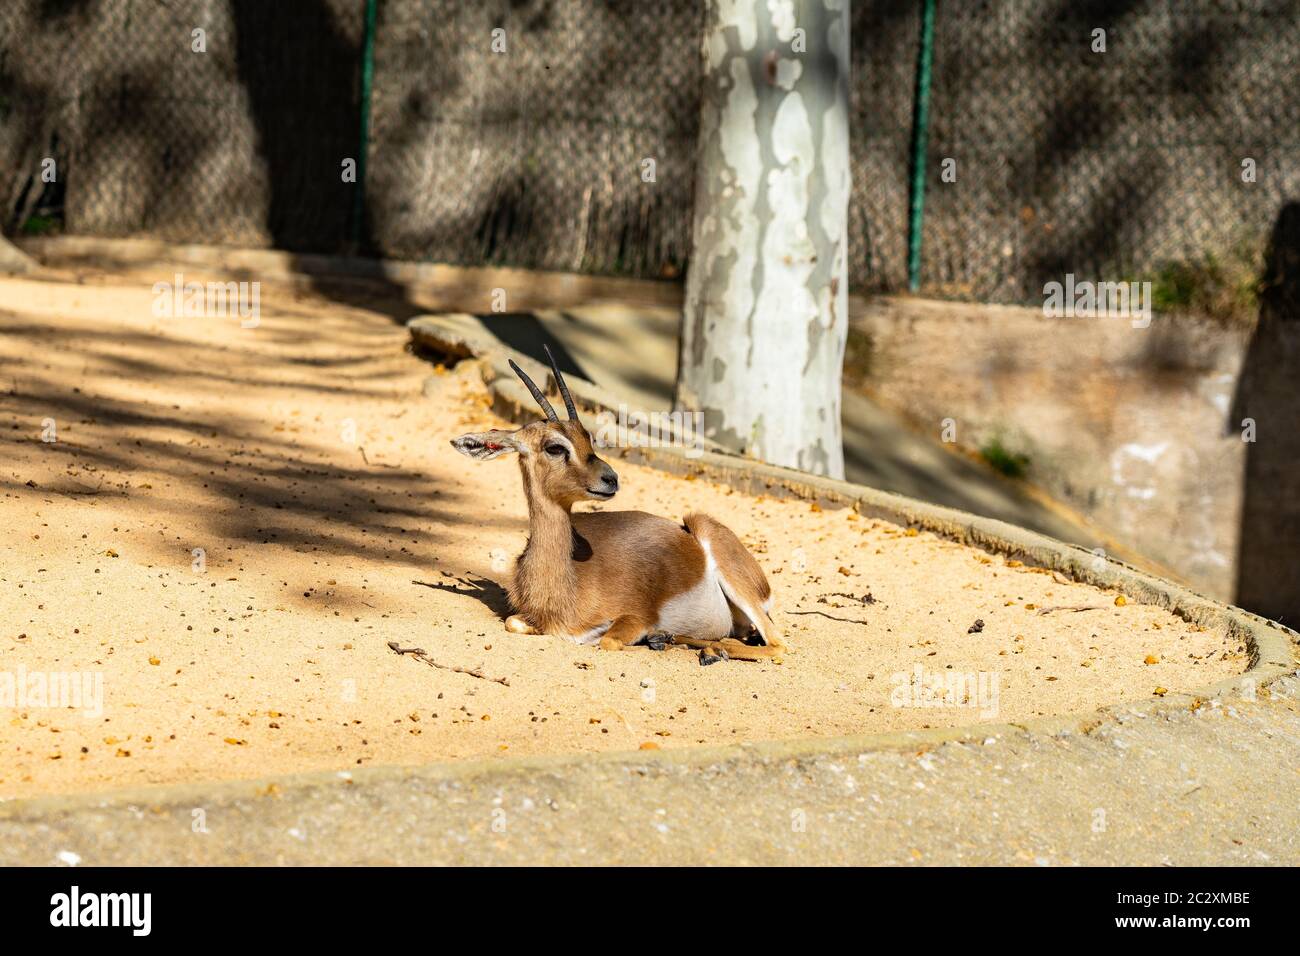 Saharian dorcas gazelle (Gazella dorcas osiris) in zoo Barcelona. Stock Photo